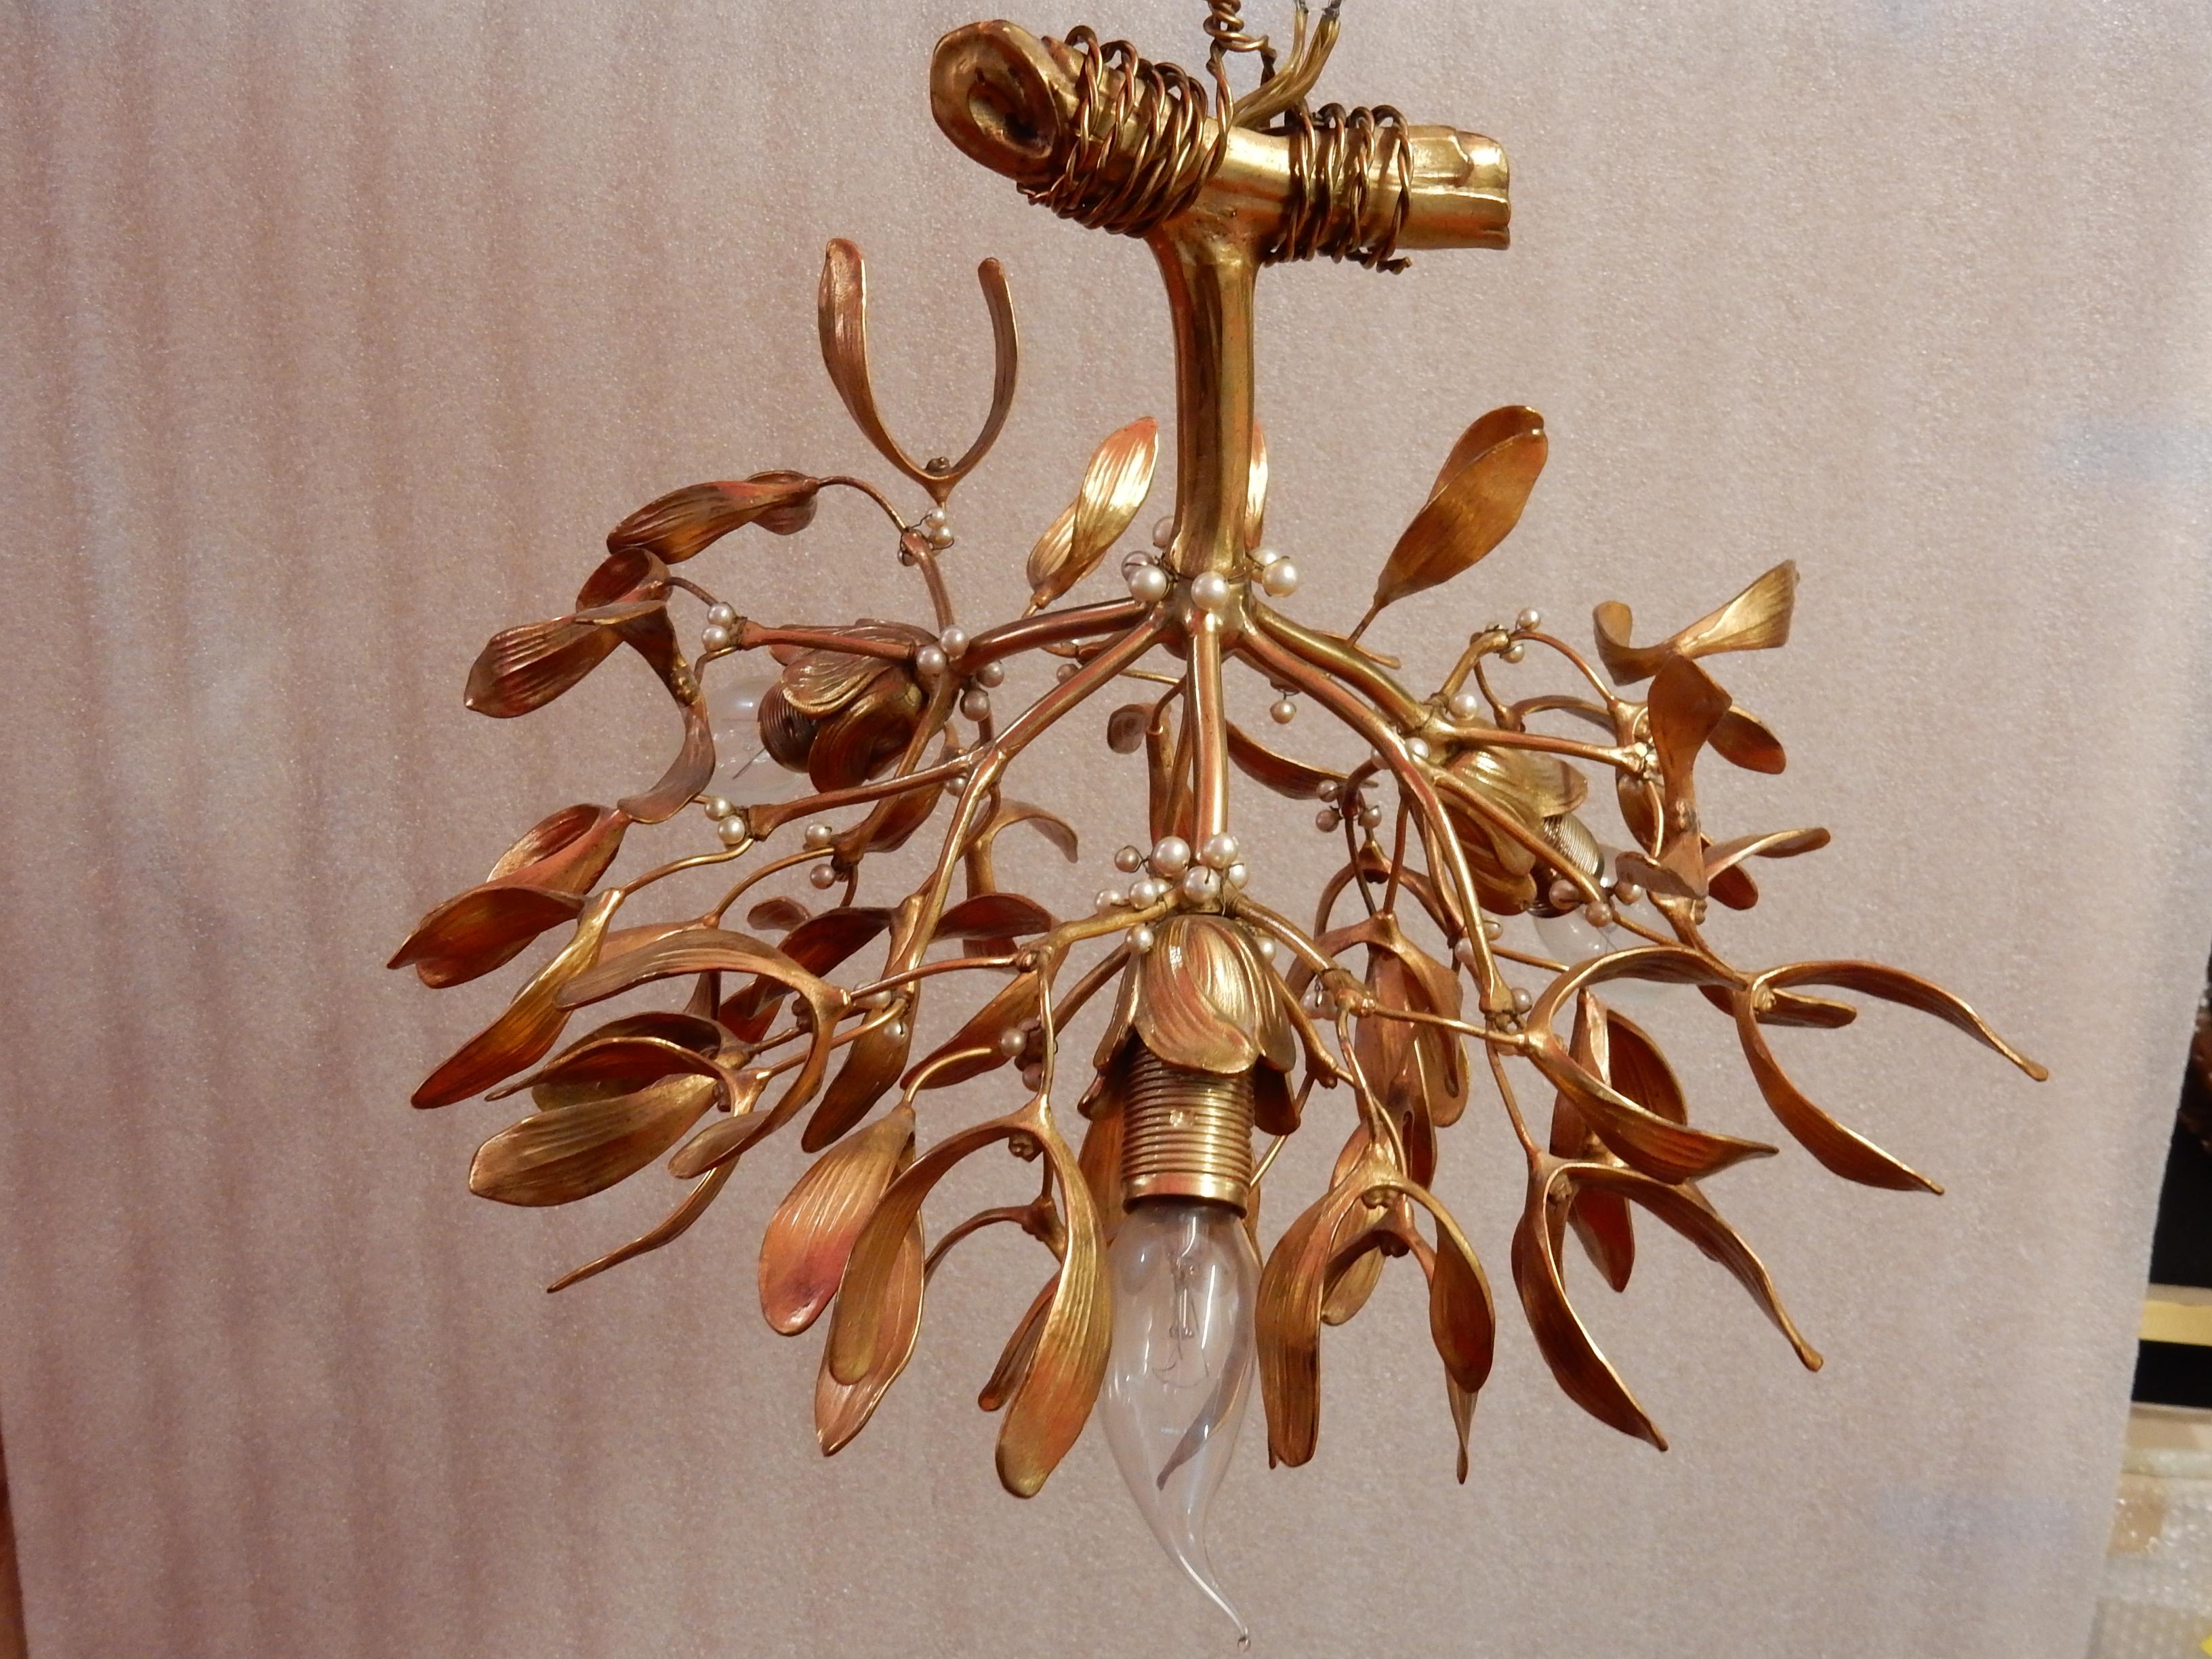 Mistelkugel-Kronleuchter aus Bronze mit Opalperlen, um 1900
Guter Zustand
Maße: Höhe: 37 cm
Durchmesser: 43 cm.